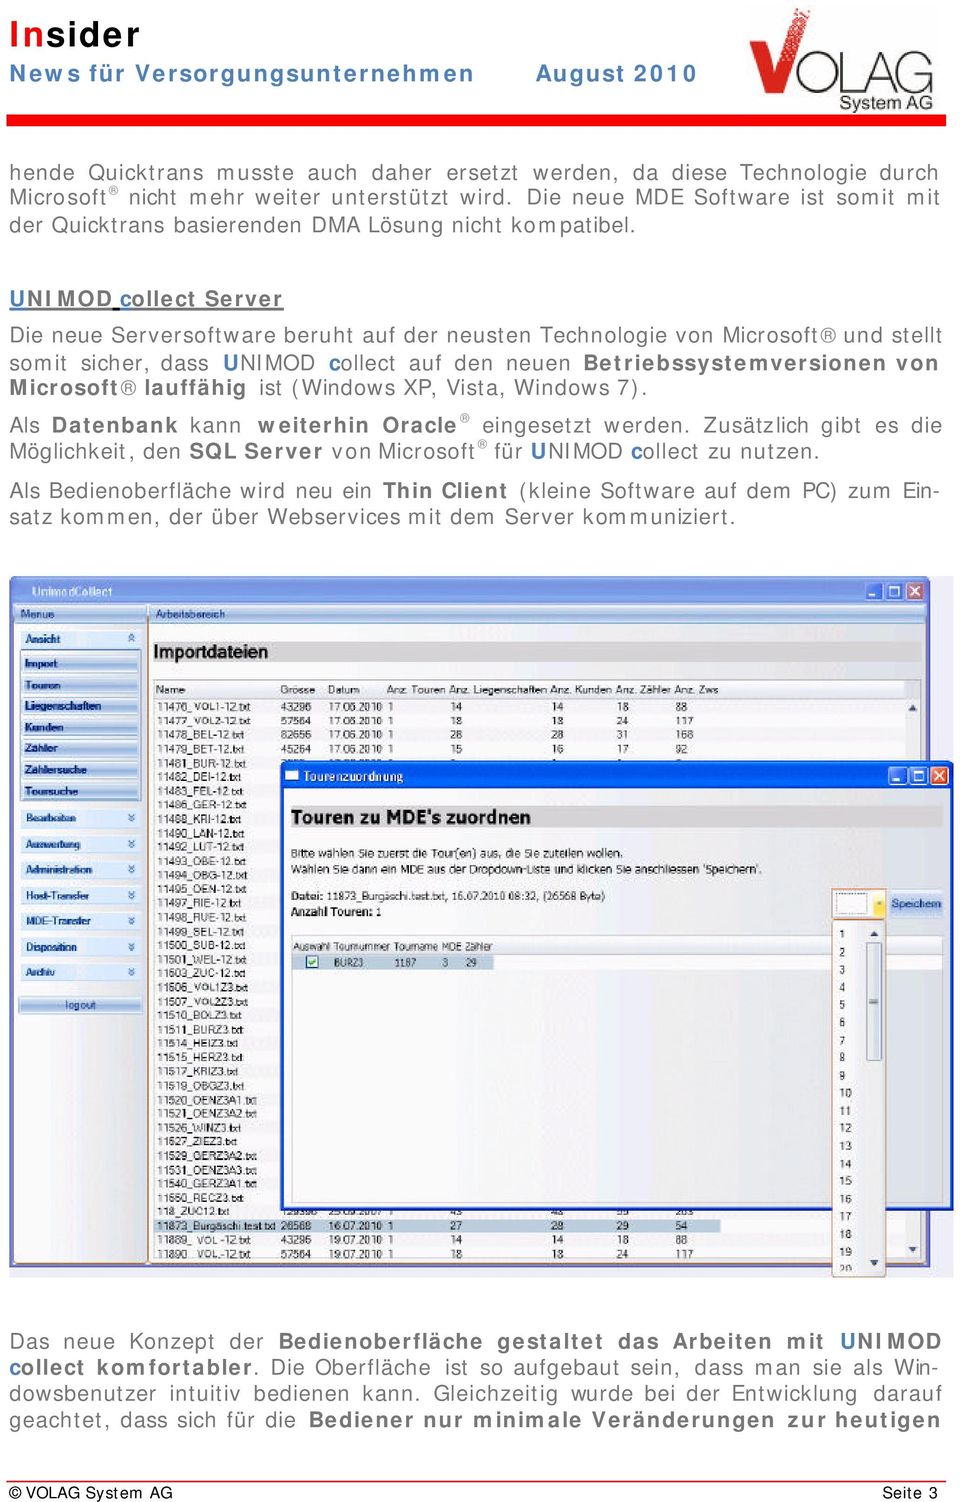 UNIMOD collect Server Die neue Serversoftware beruht auf der neusten Technologie von Microsoft und stellt somit sicher, dass UNIMOD collect auf den neuen Betriebssystemversionen von Microsoft